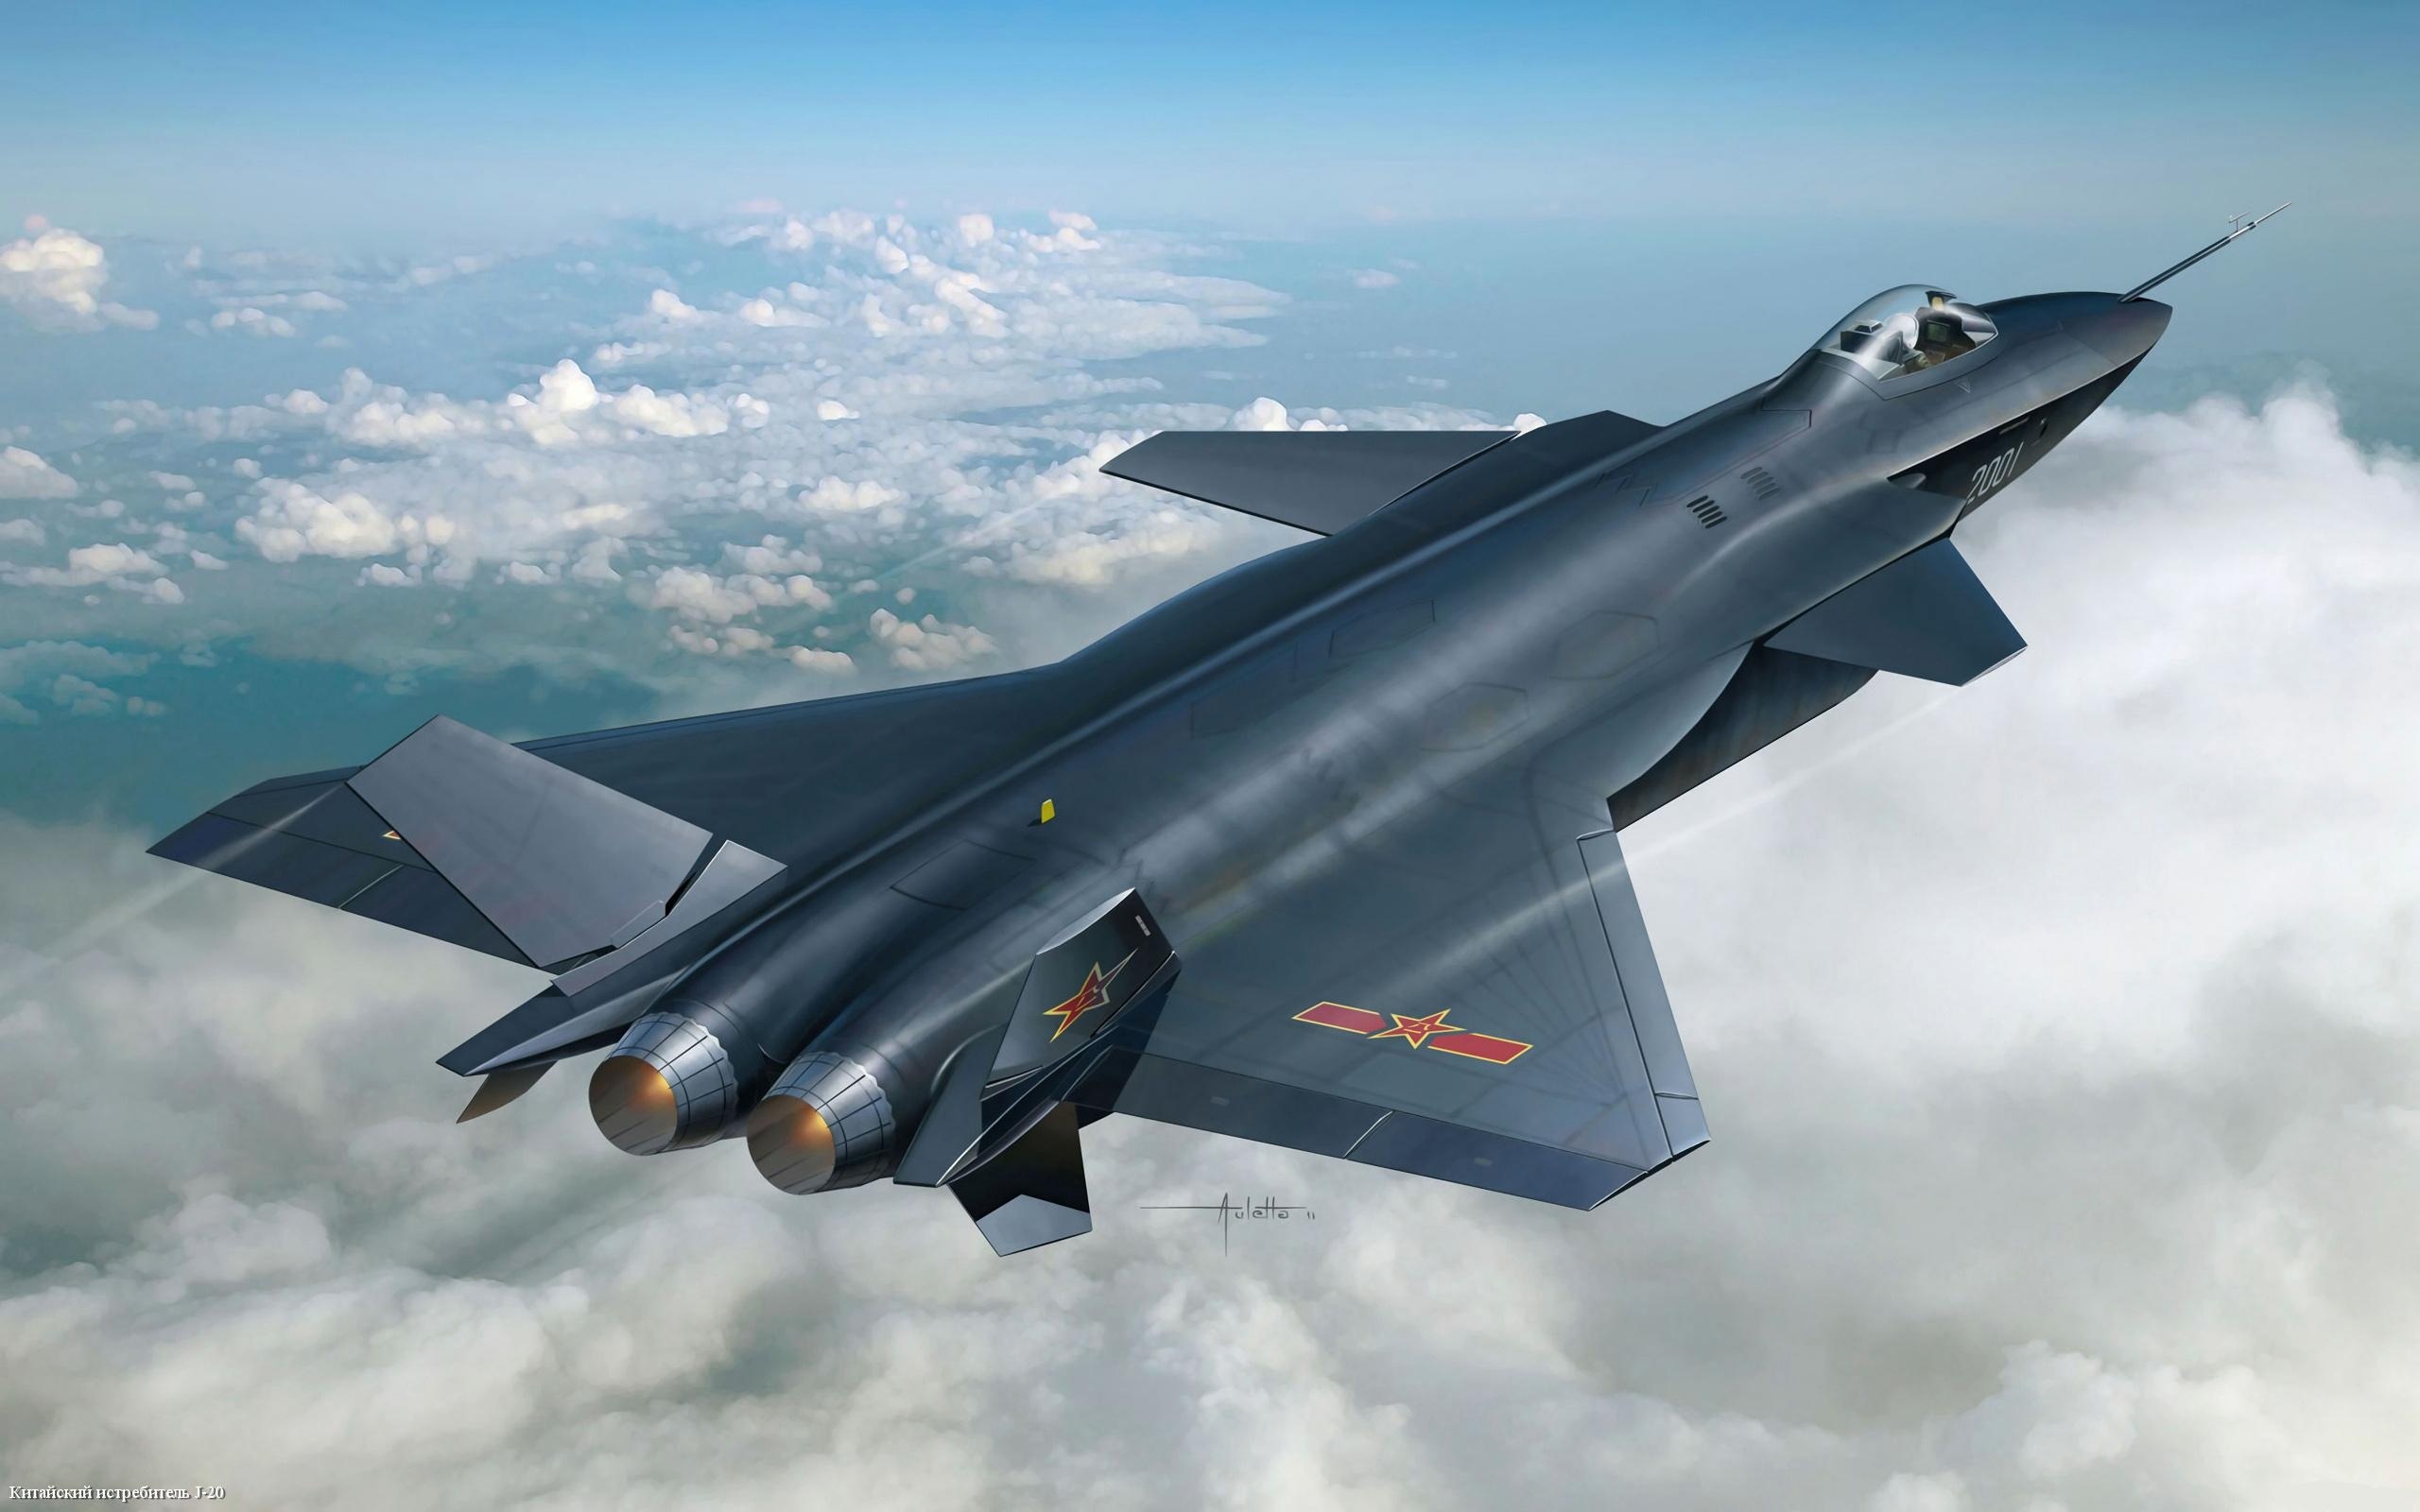 Đài Loan tin rằng những chiếc F-16 được nâng cấp của họ sánh ngang với chiến đấu cơ tàng hình J-20 của Trung Quốc